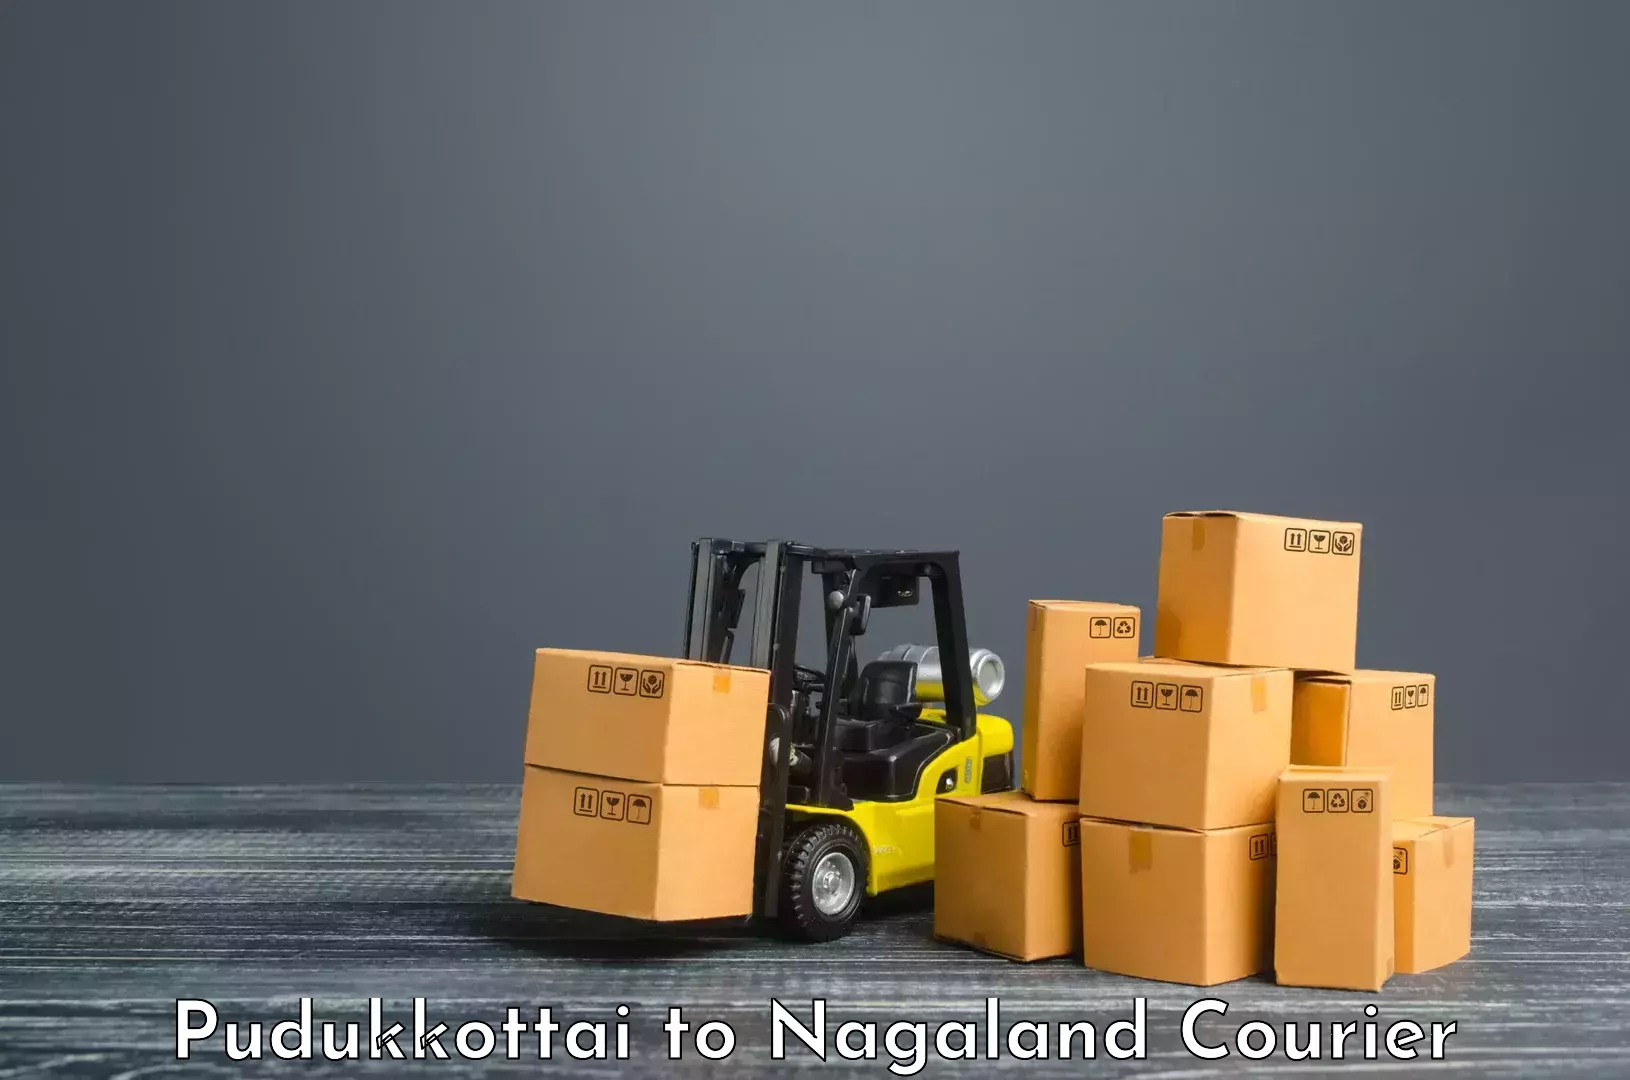 Dynamic courier operations Pudukkottai to Wokha